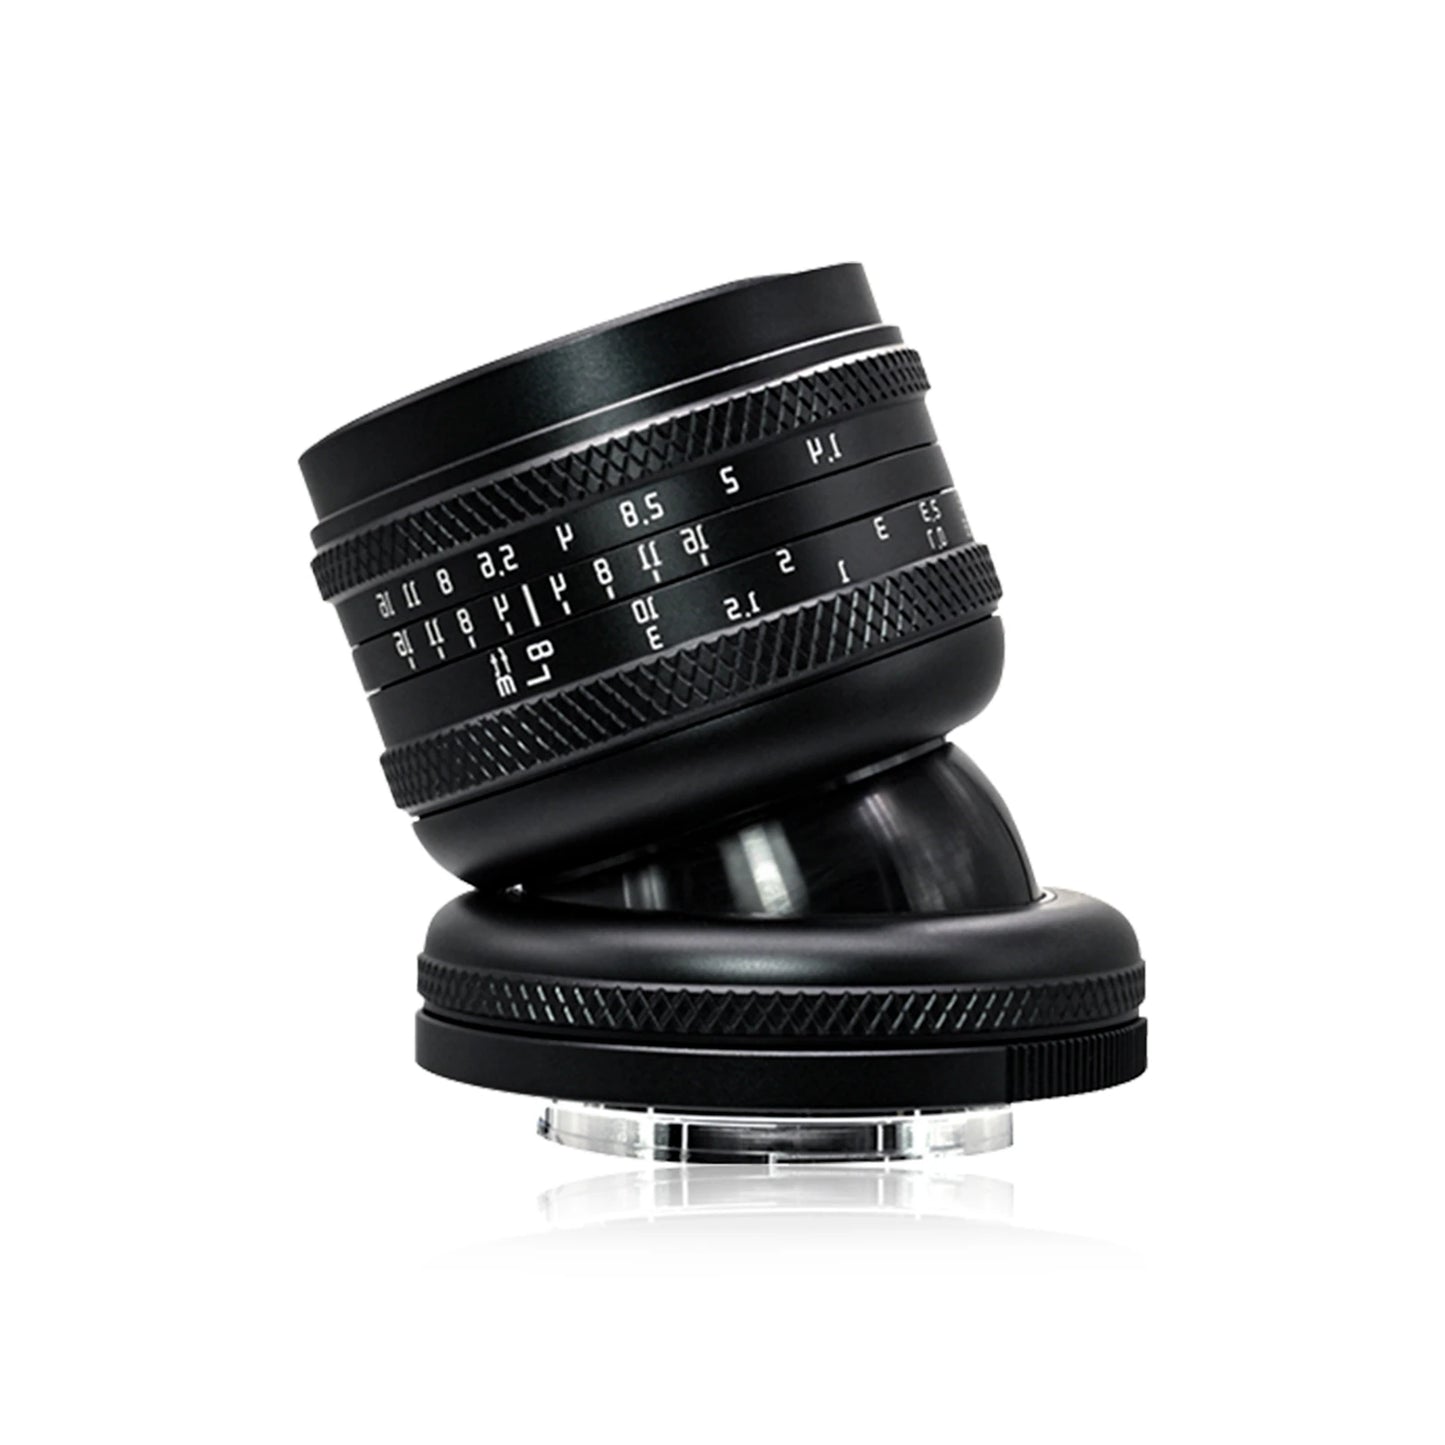 AstrHori 50mm F1.4 Large Aperture Full Frame Manual 2 in 1Tilt Lens